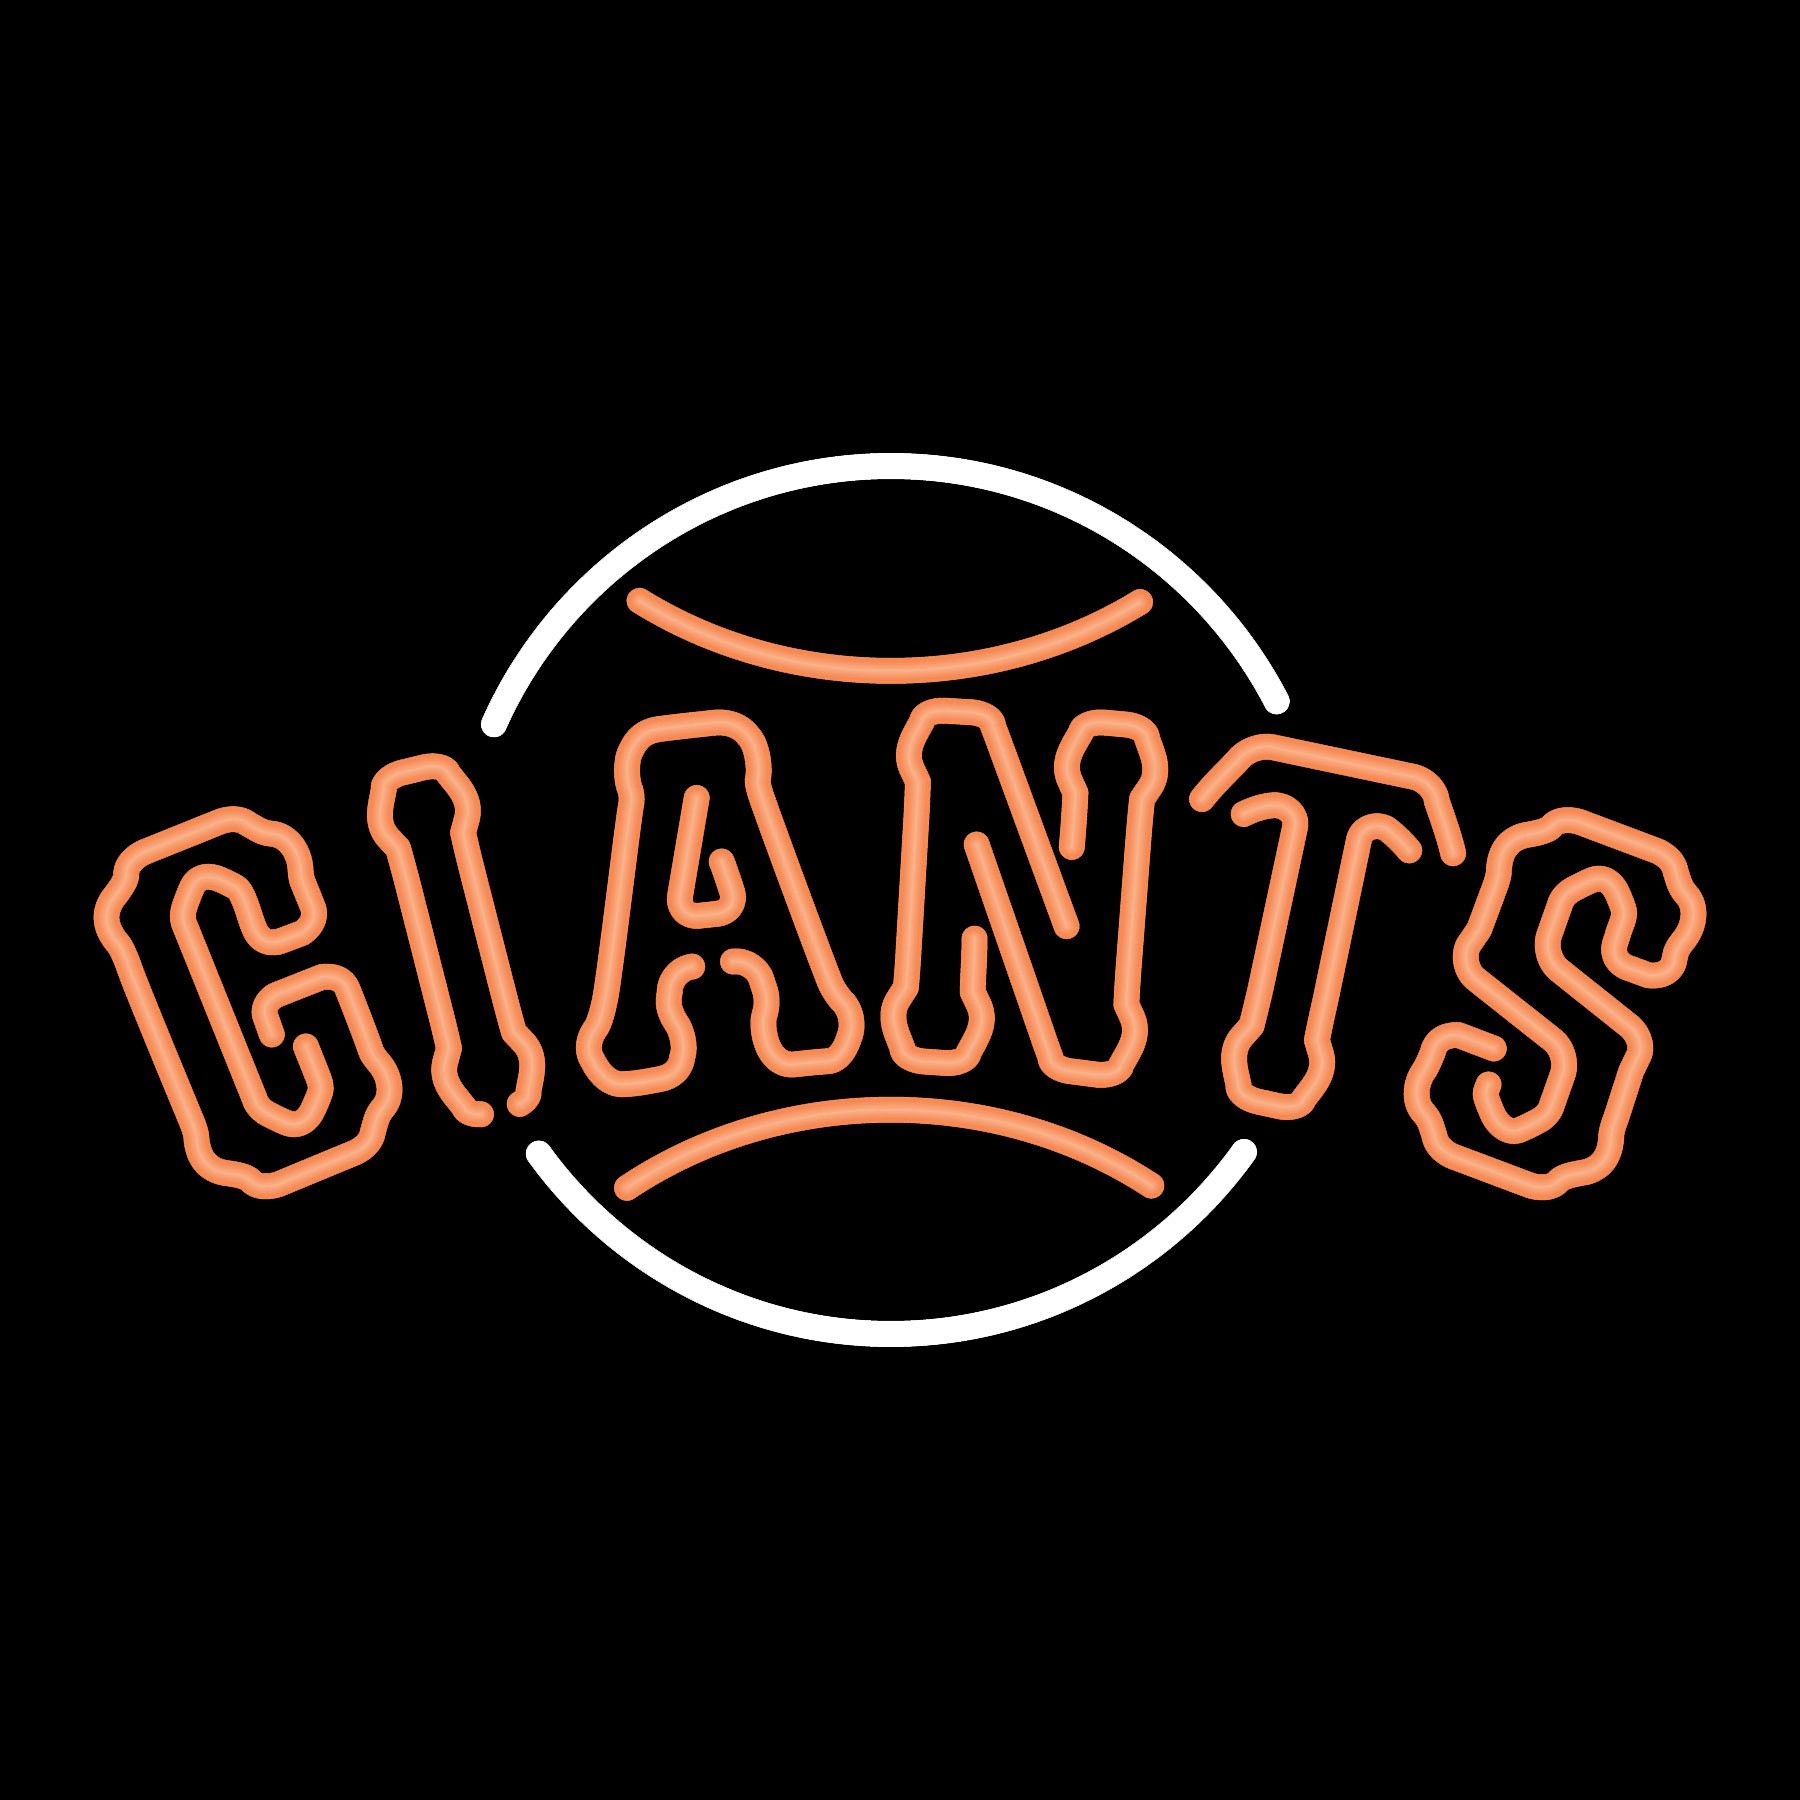 San Francisco Giants Logo - HD Wallpaper 